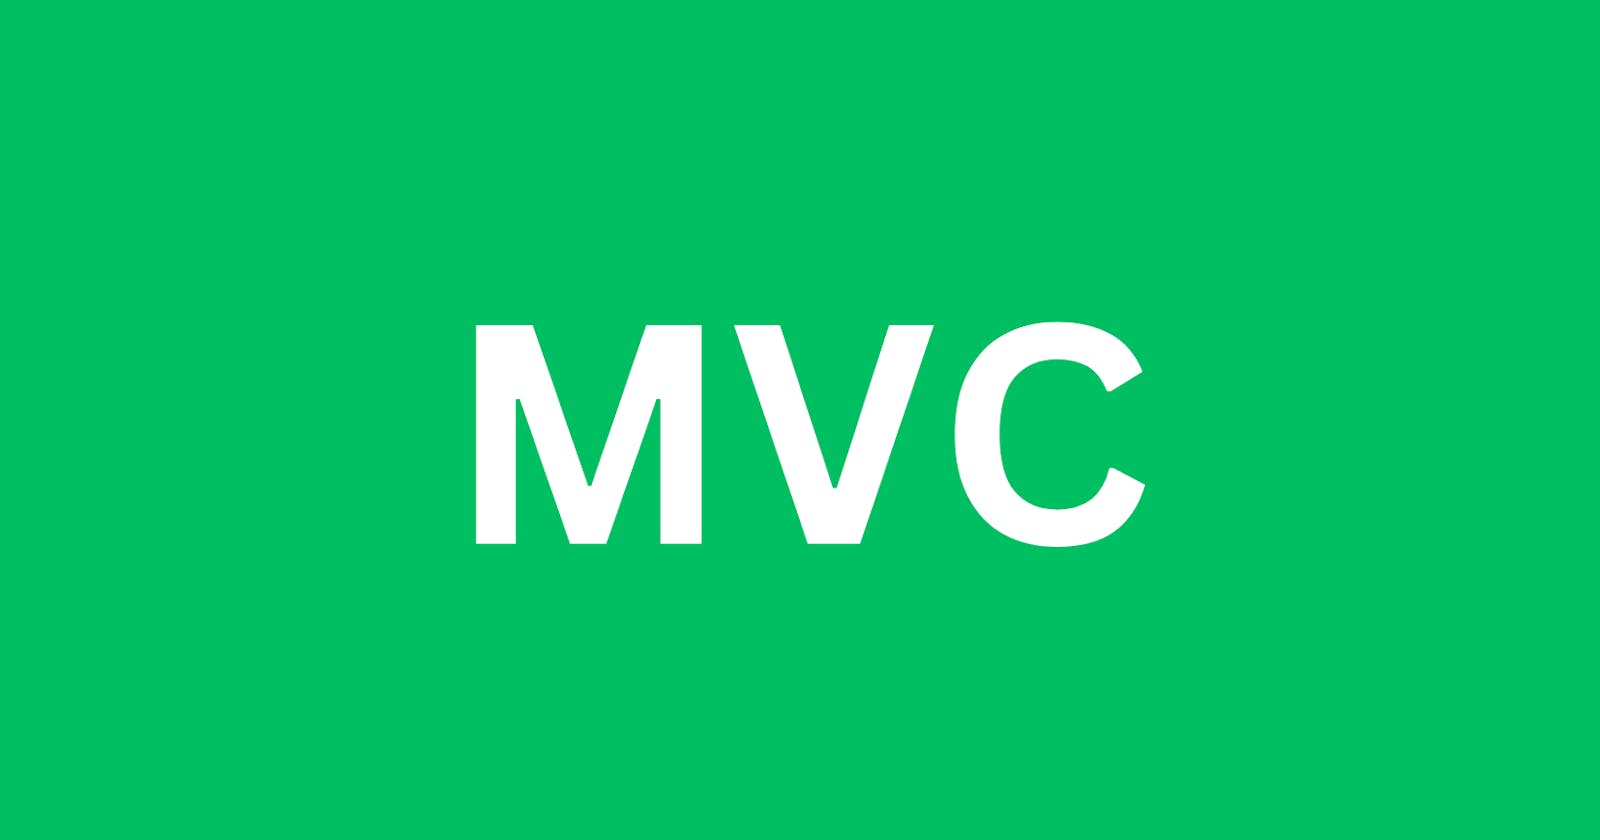 The Mvc